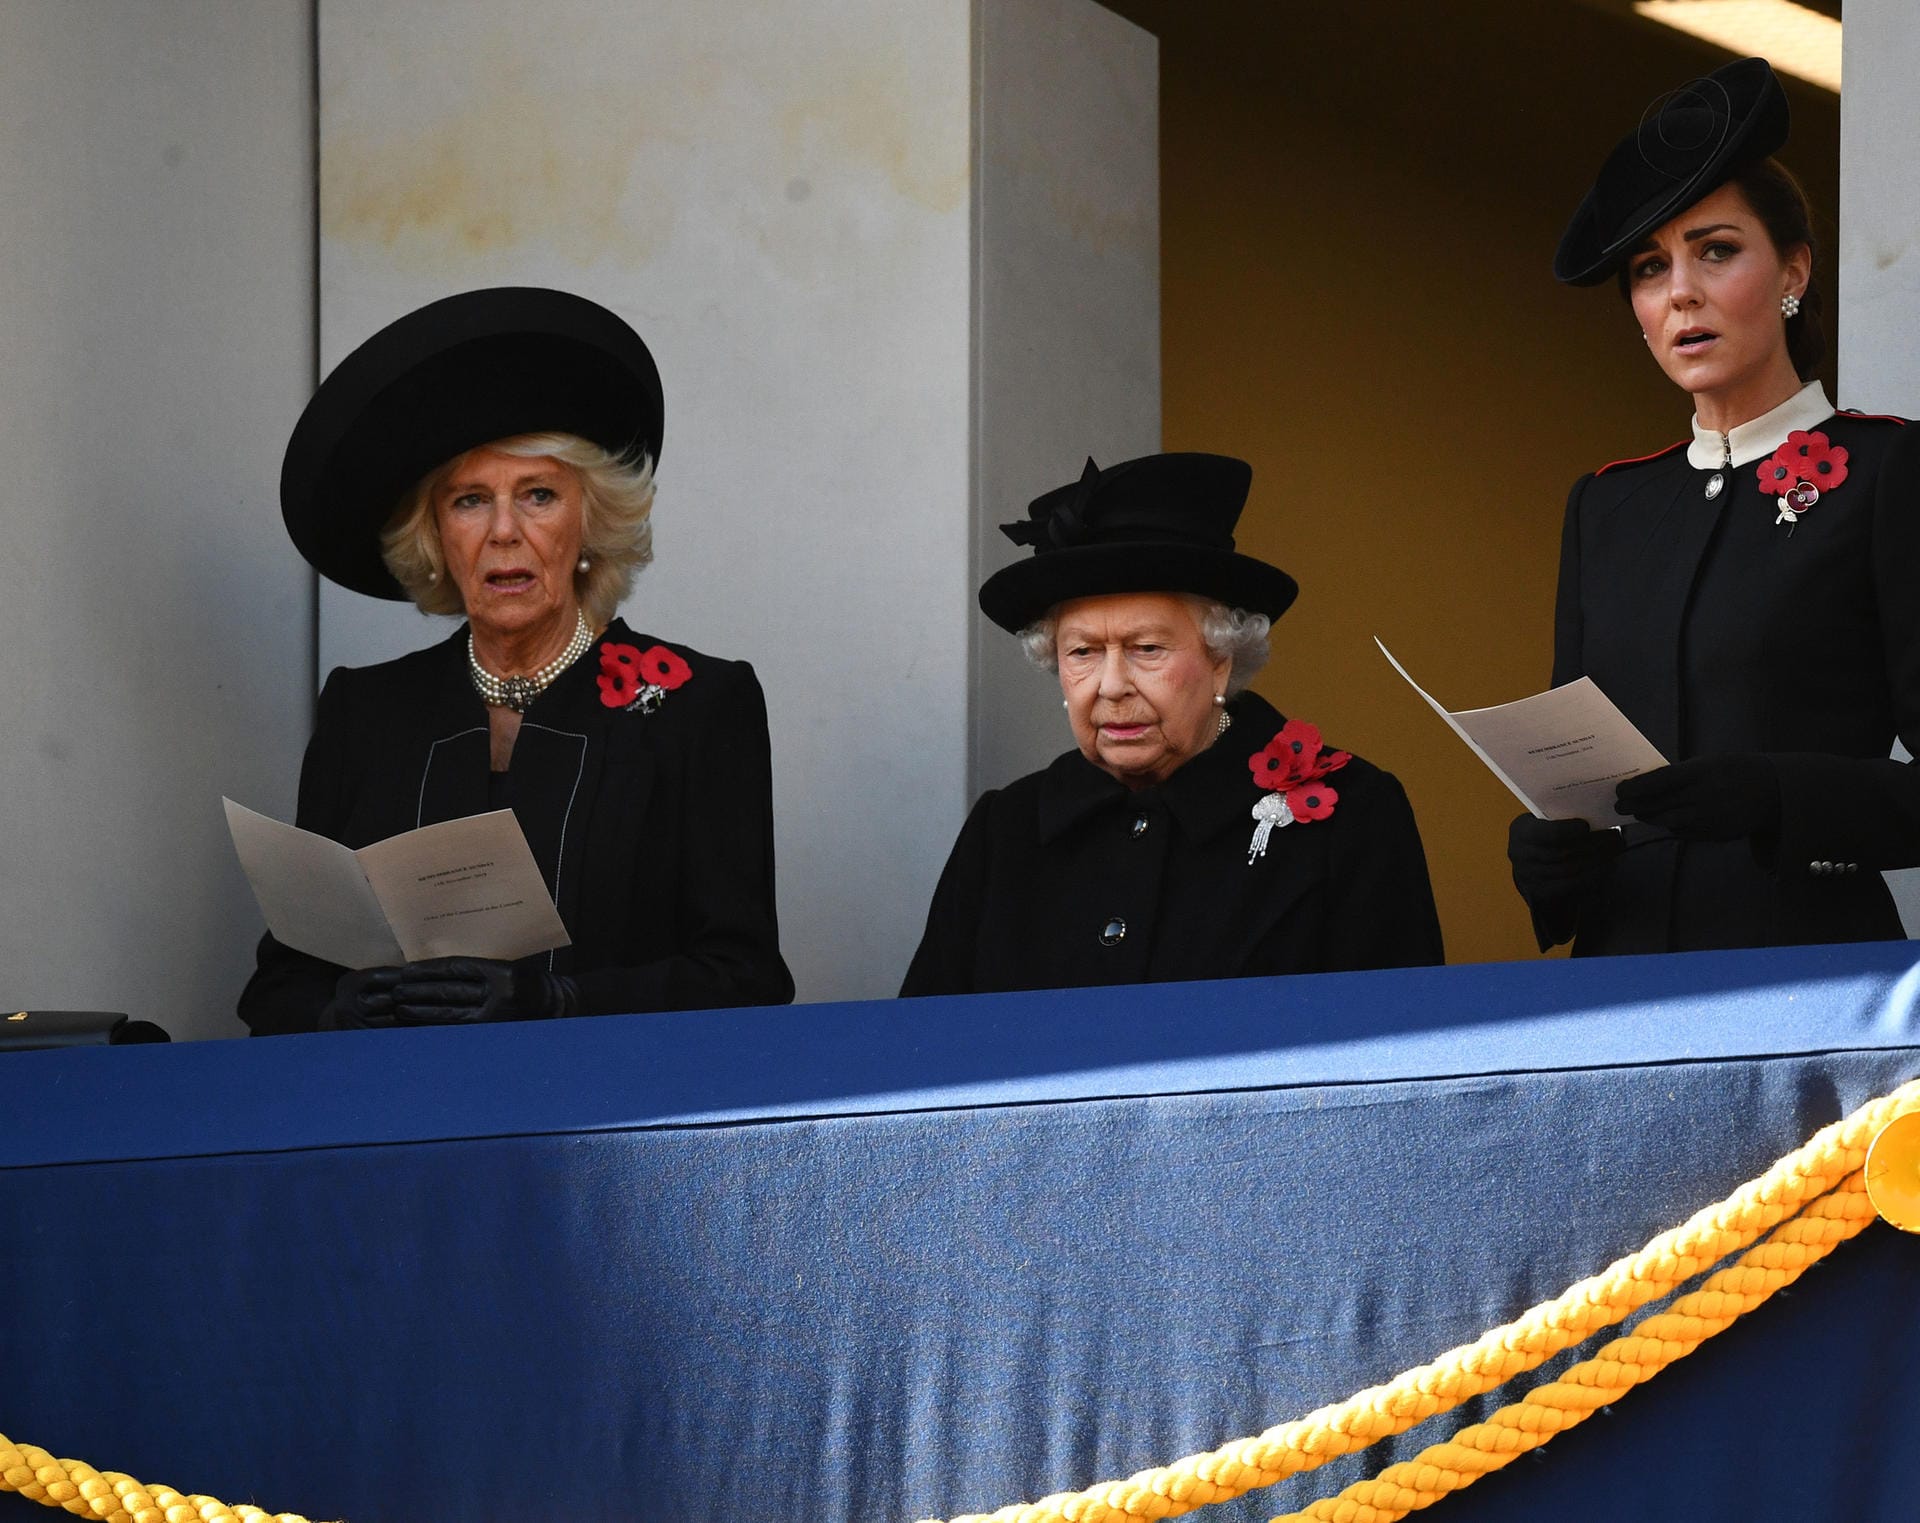 Auch das kreideten die Kritiker an: Camilla und Herzogin müssen den Liedtext ablesen, die Queen kann es auch ohne Hilfe singen.